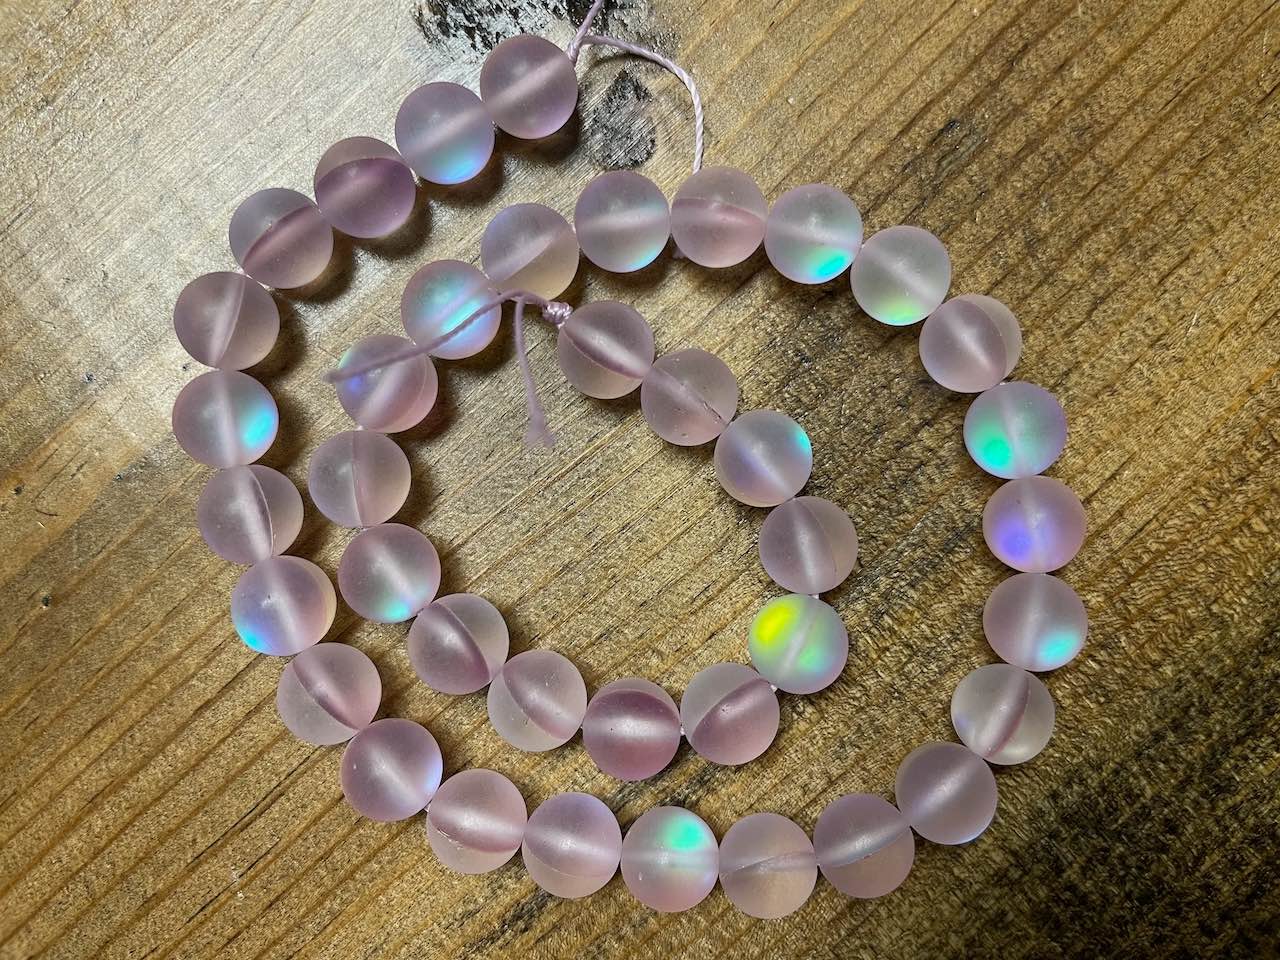 Mermaid Glass (Manmade Moonstone) 10mm Round Beads